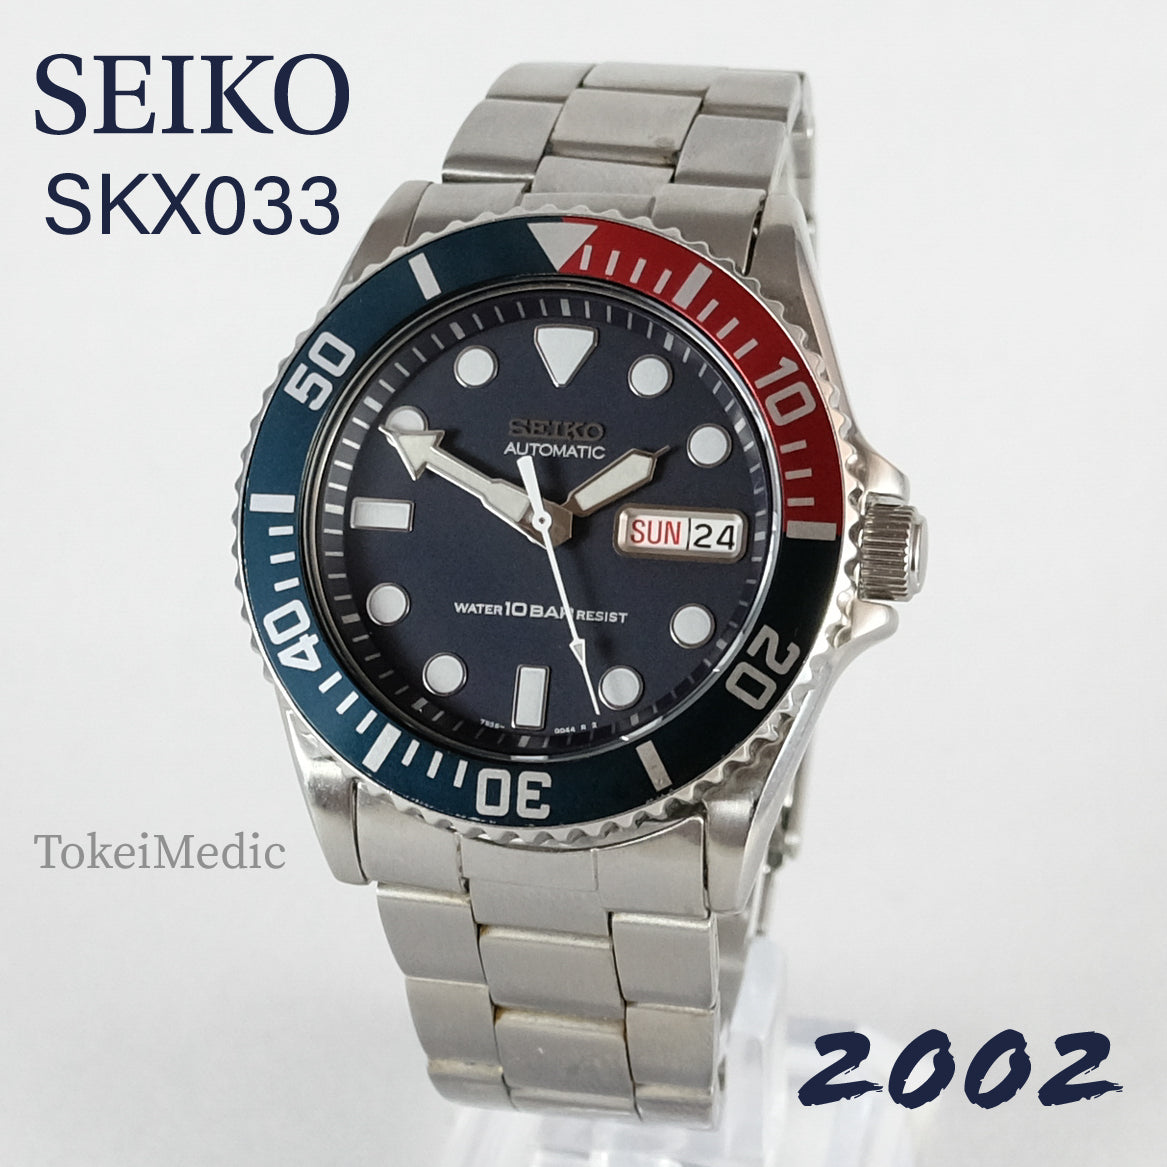 2002 Seiko SKX033 7S26-0040